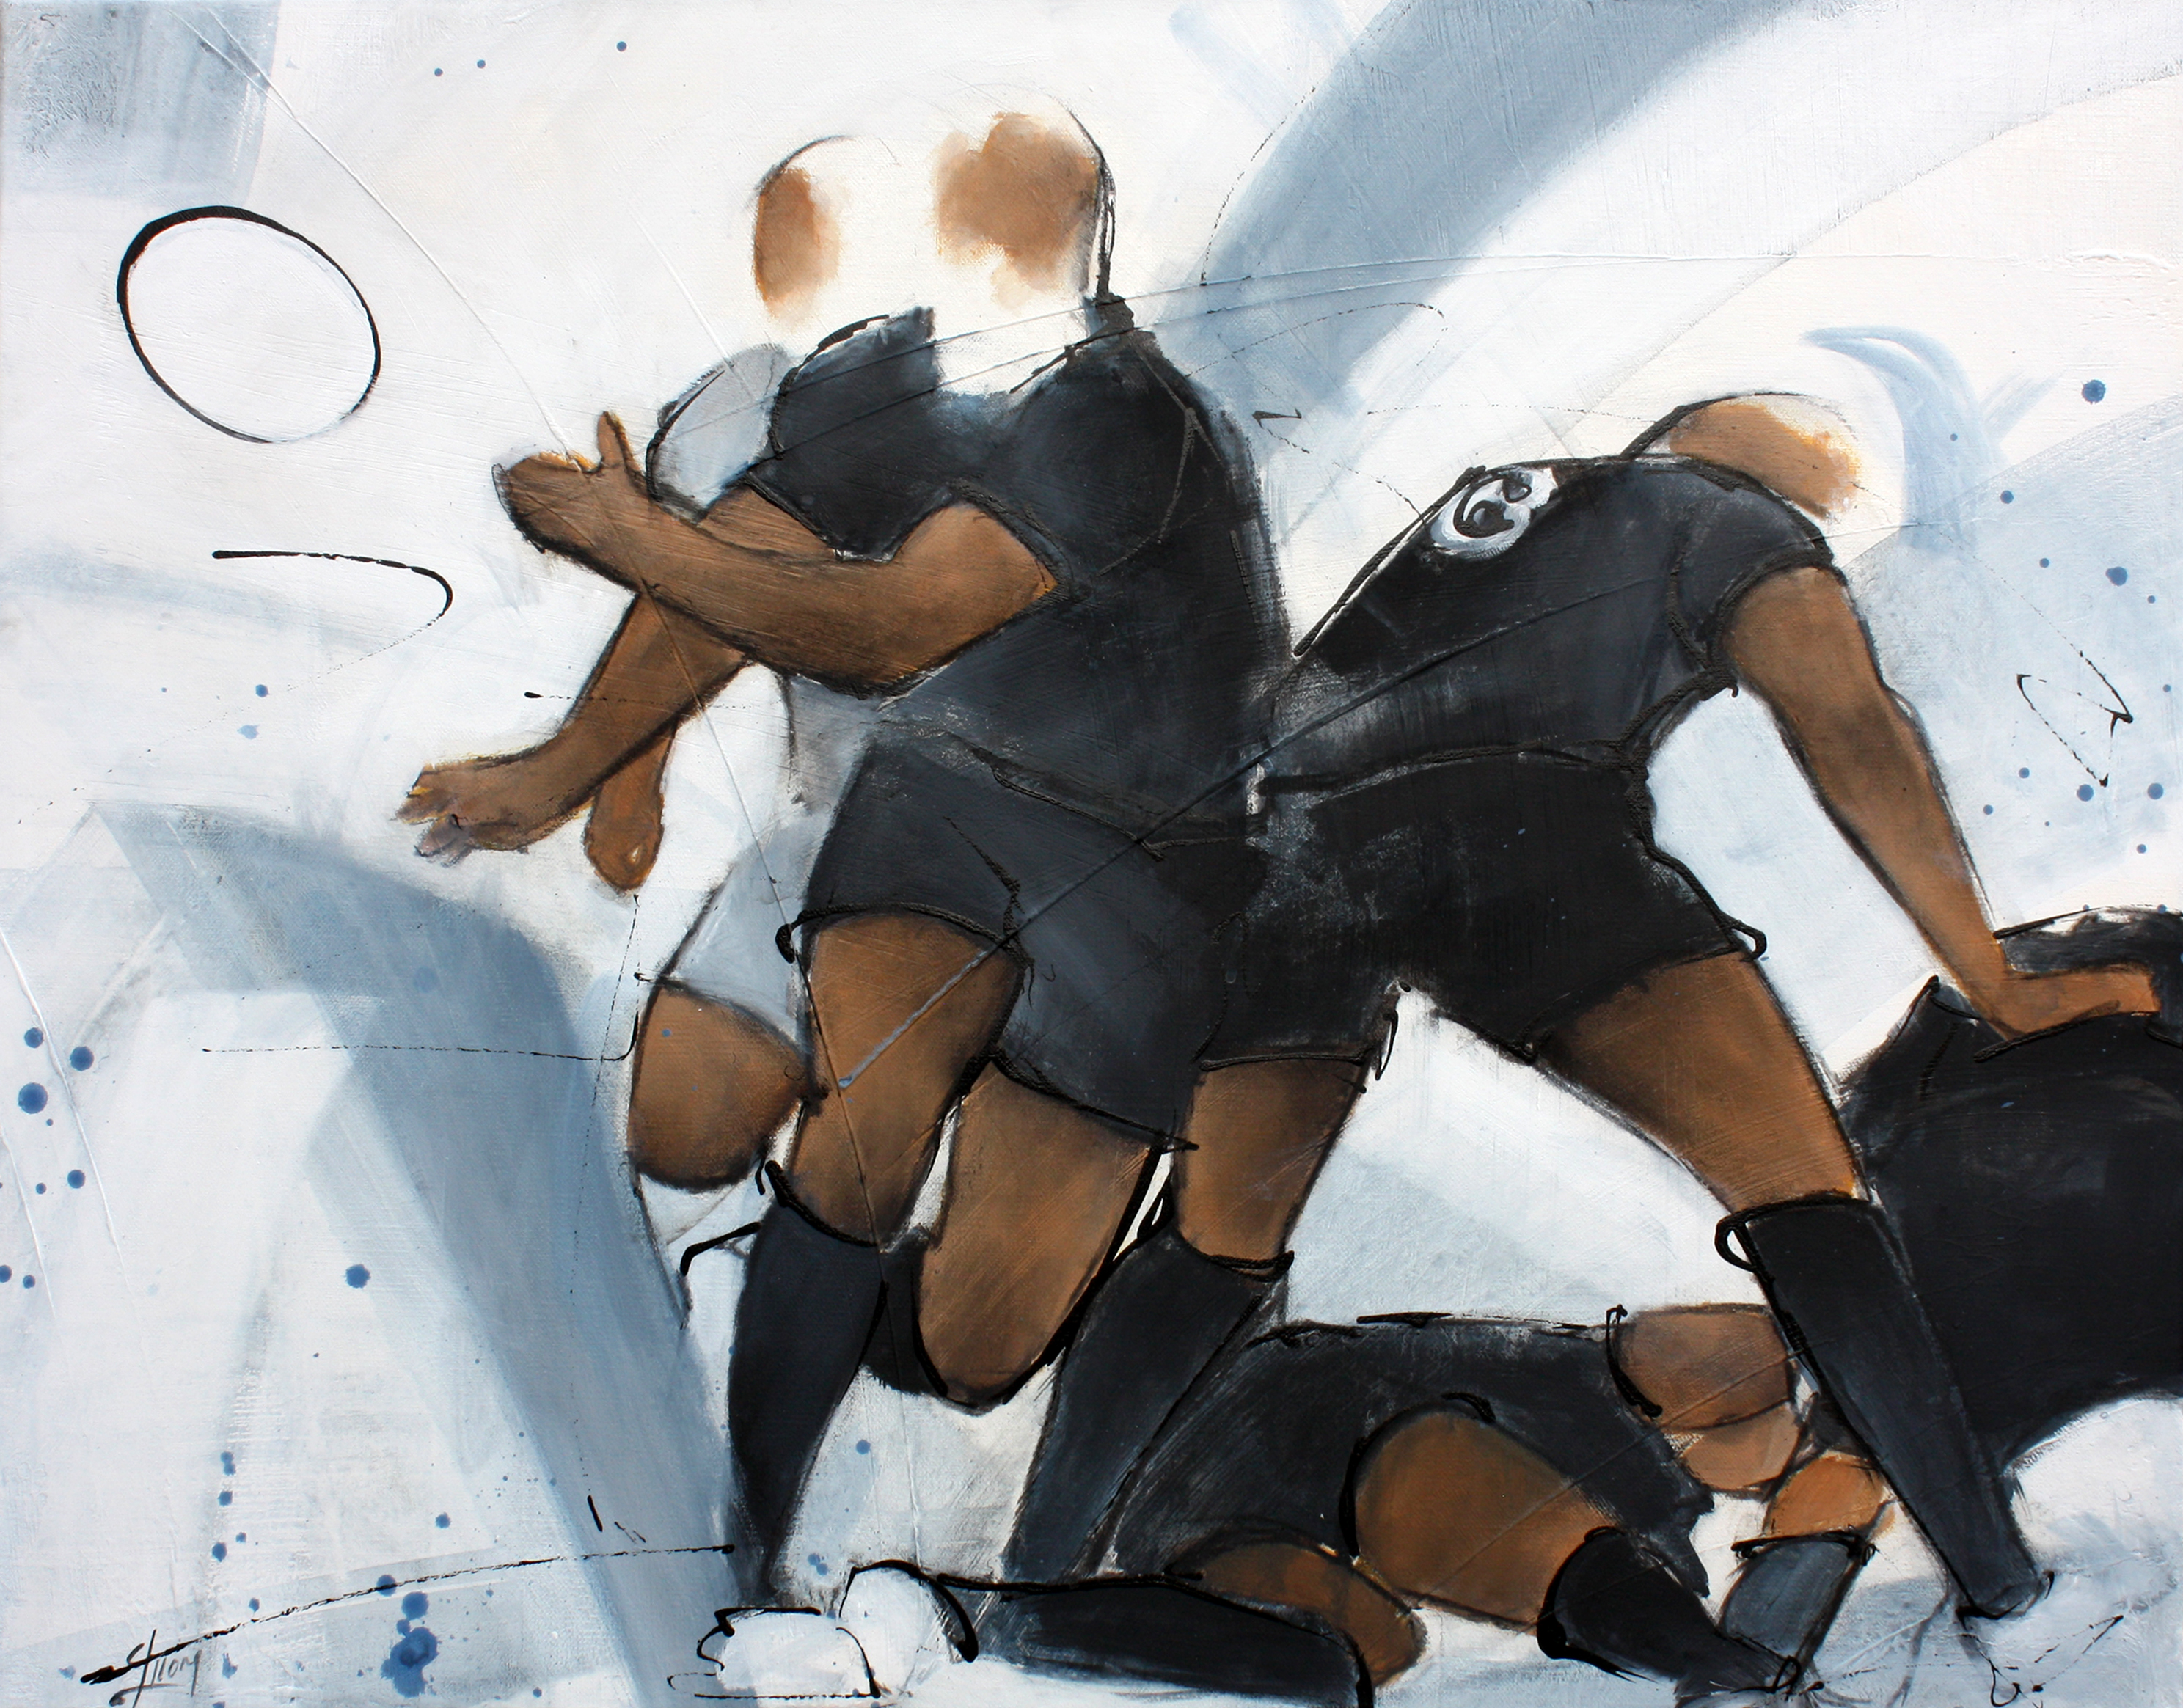 Art sport rugby : Peinture sur toile d'une sortie de ruck lors d'un match de rugby